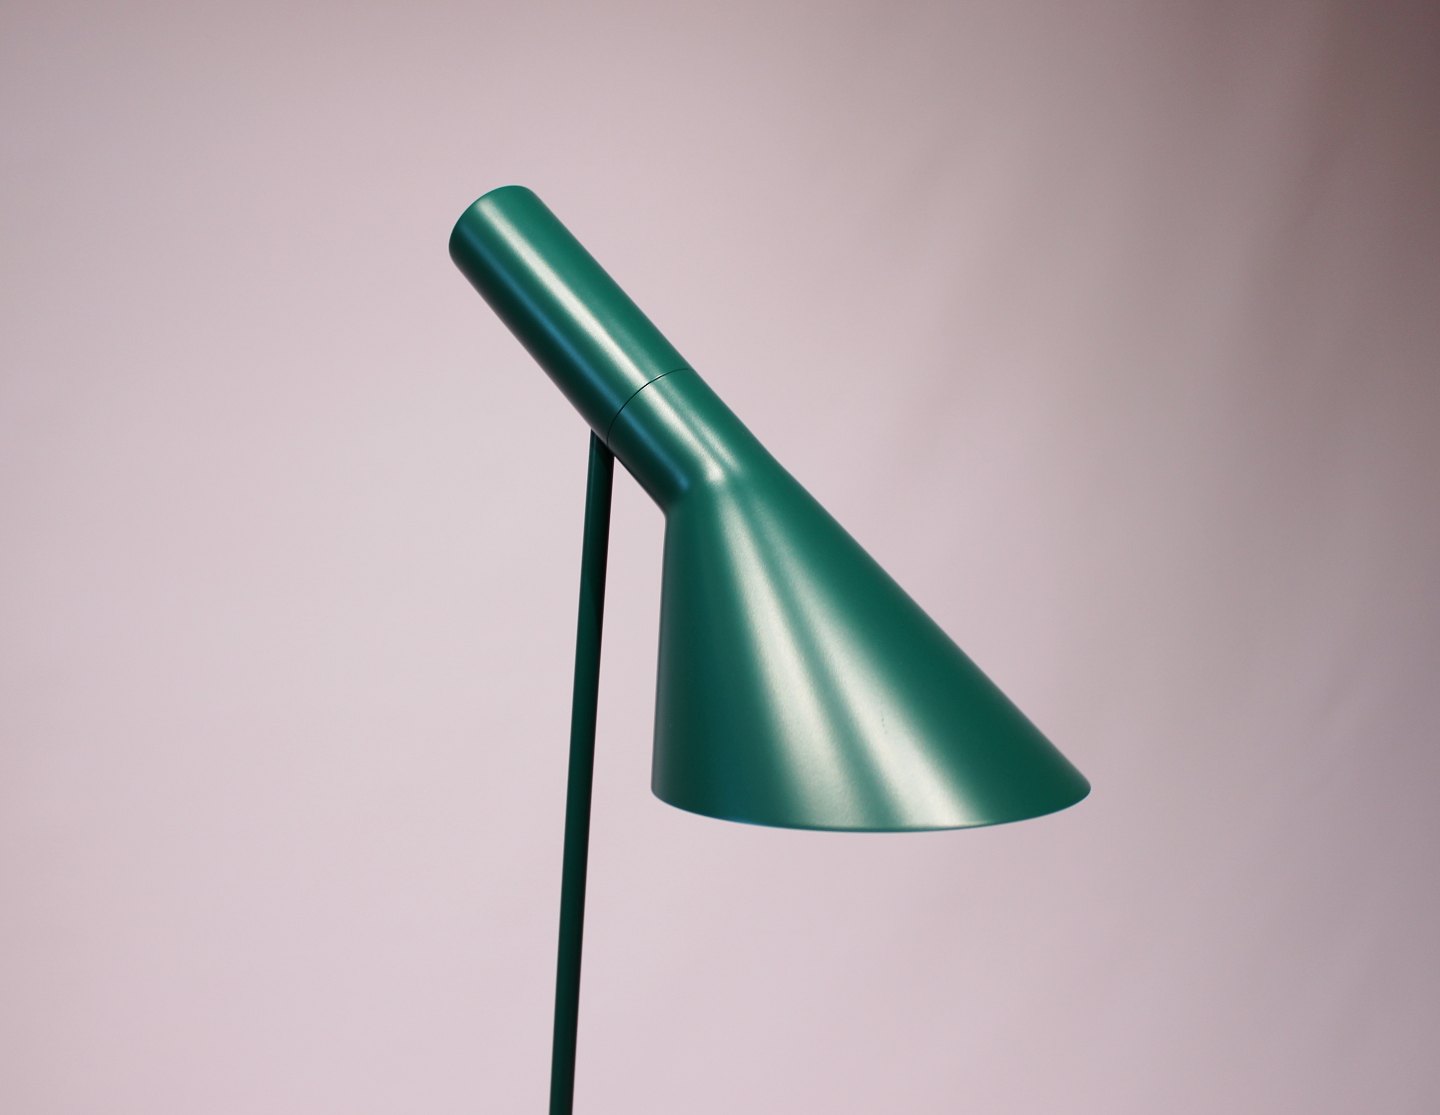 bud Revolutionerende mikro www.Antikvitet.net - Grøn gulvlampe designet af Arne Jacobsen i 1960 og  fremstillet af Louis Poulsen. * 5000m2 udstilling